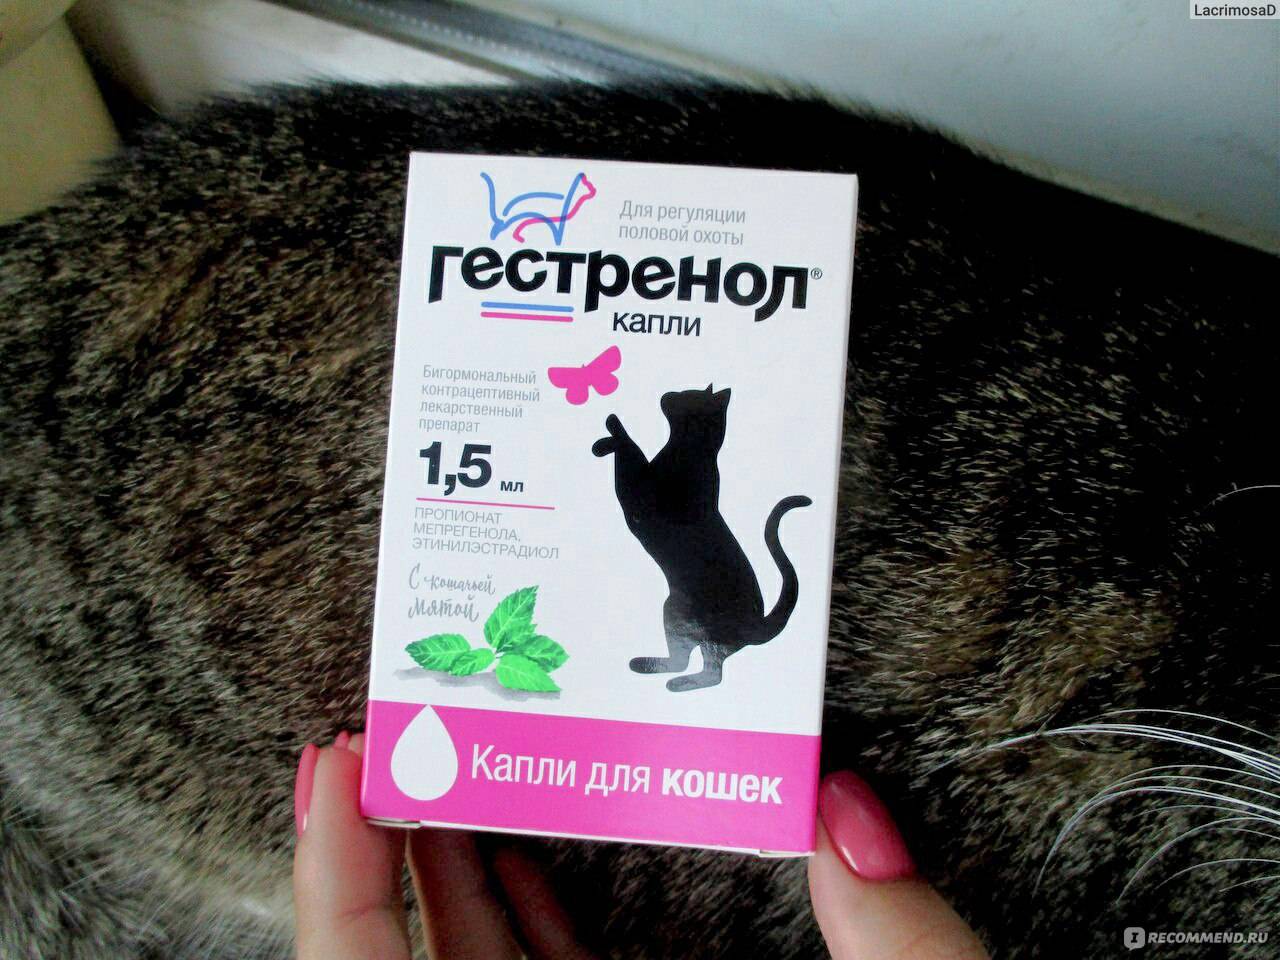 Противозачаточные таблетки для кошек